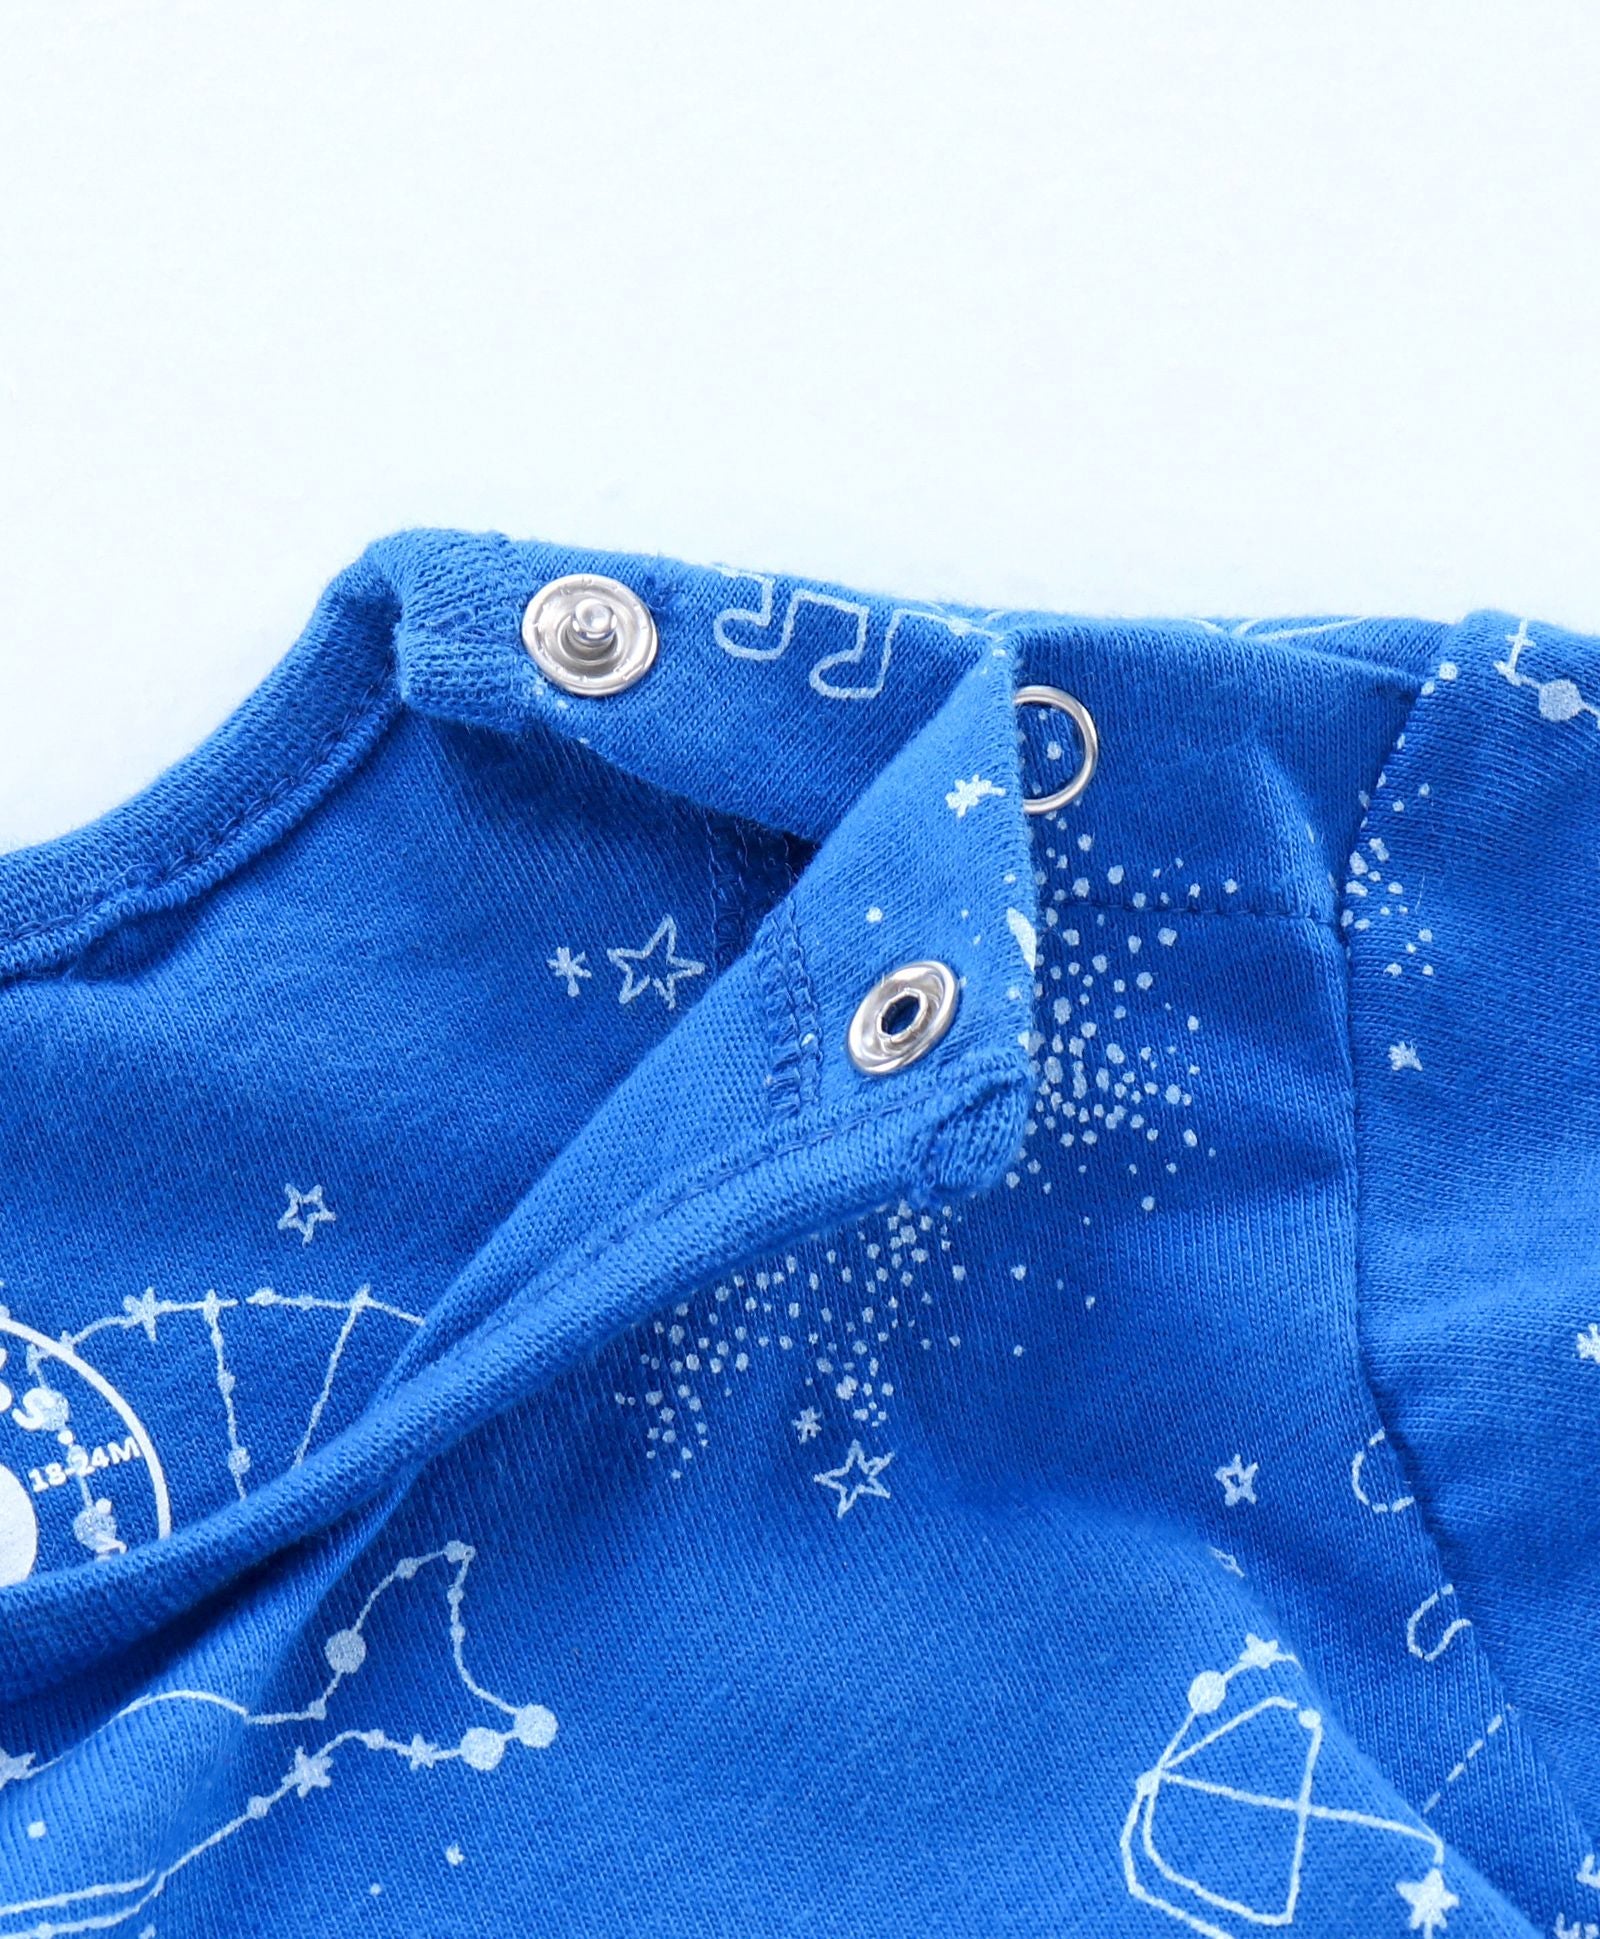 Full Sleeve Constellation Print Tee - Blue